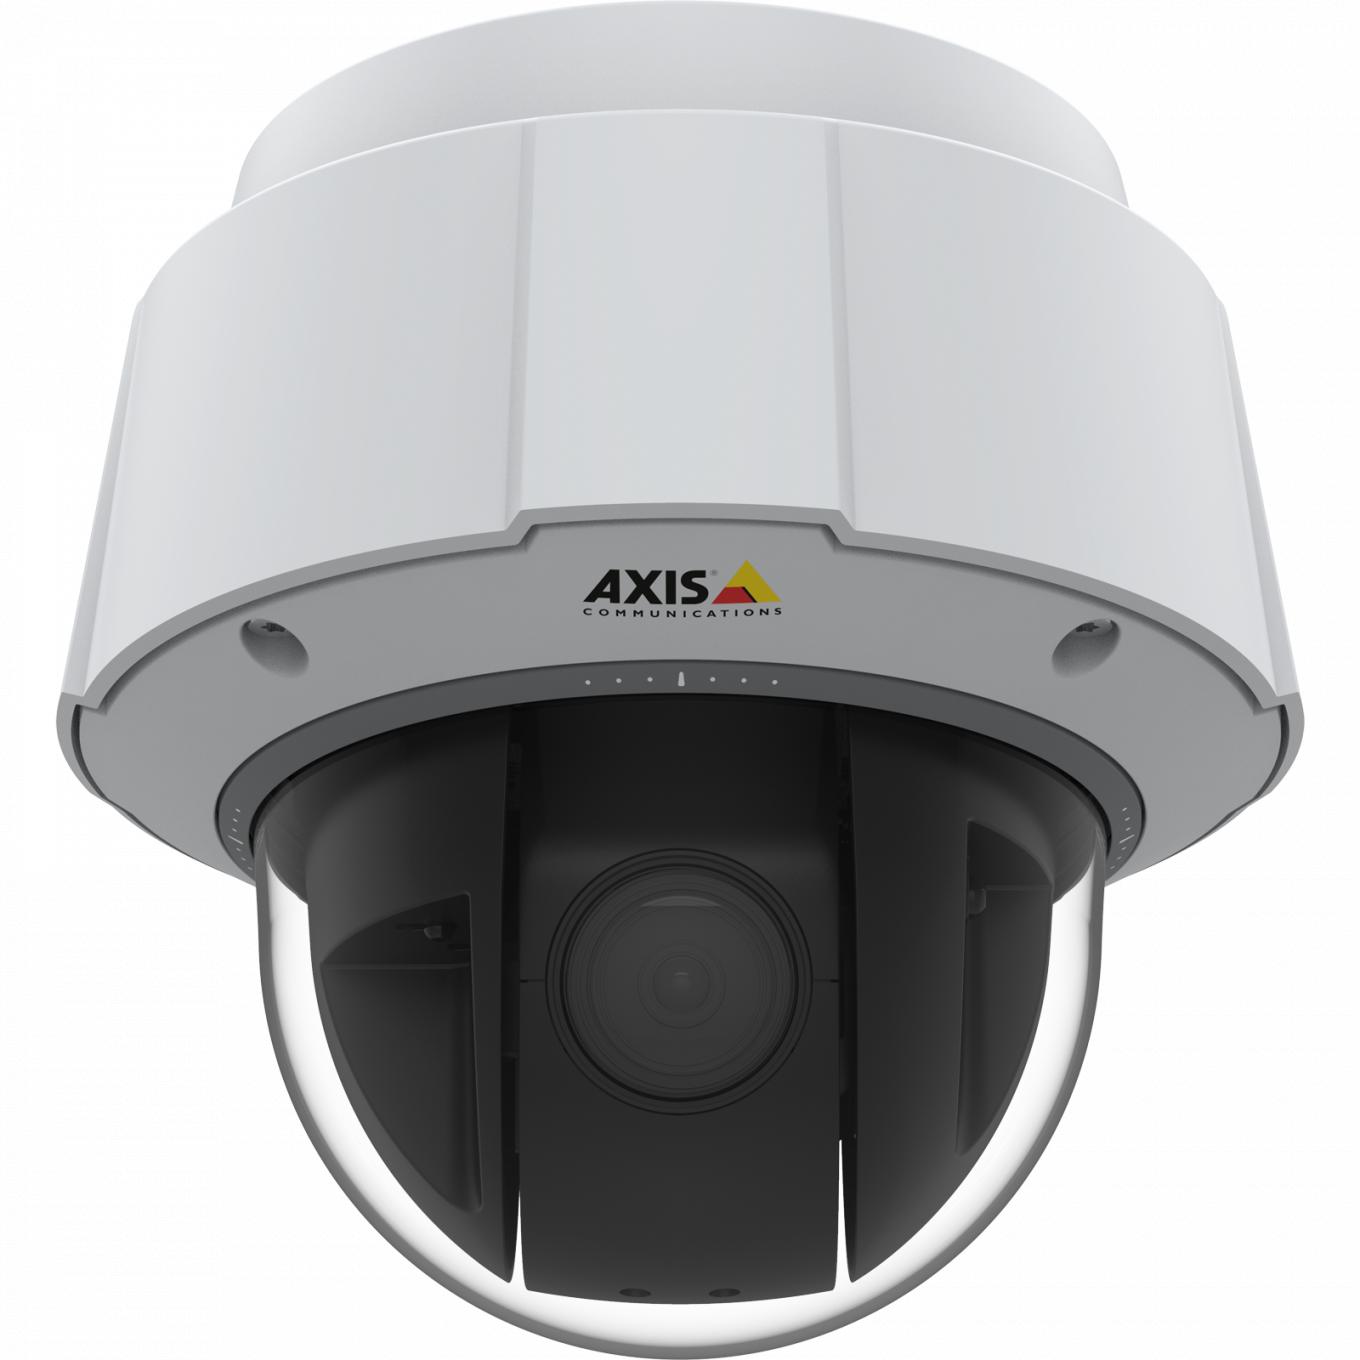 Die IP Camera AXIS q6075-e ist TPM, FIPS 140-2 Level 2 zertifiziert. Die Kamera wird von vorne betrachtet.